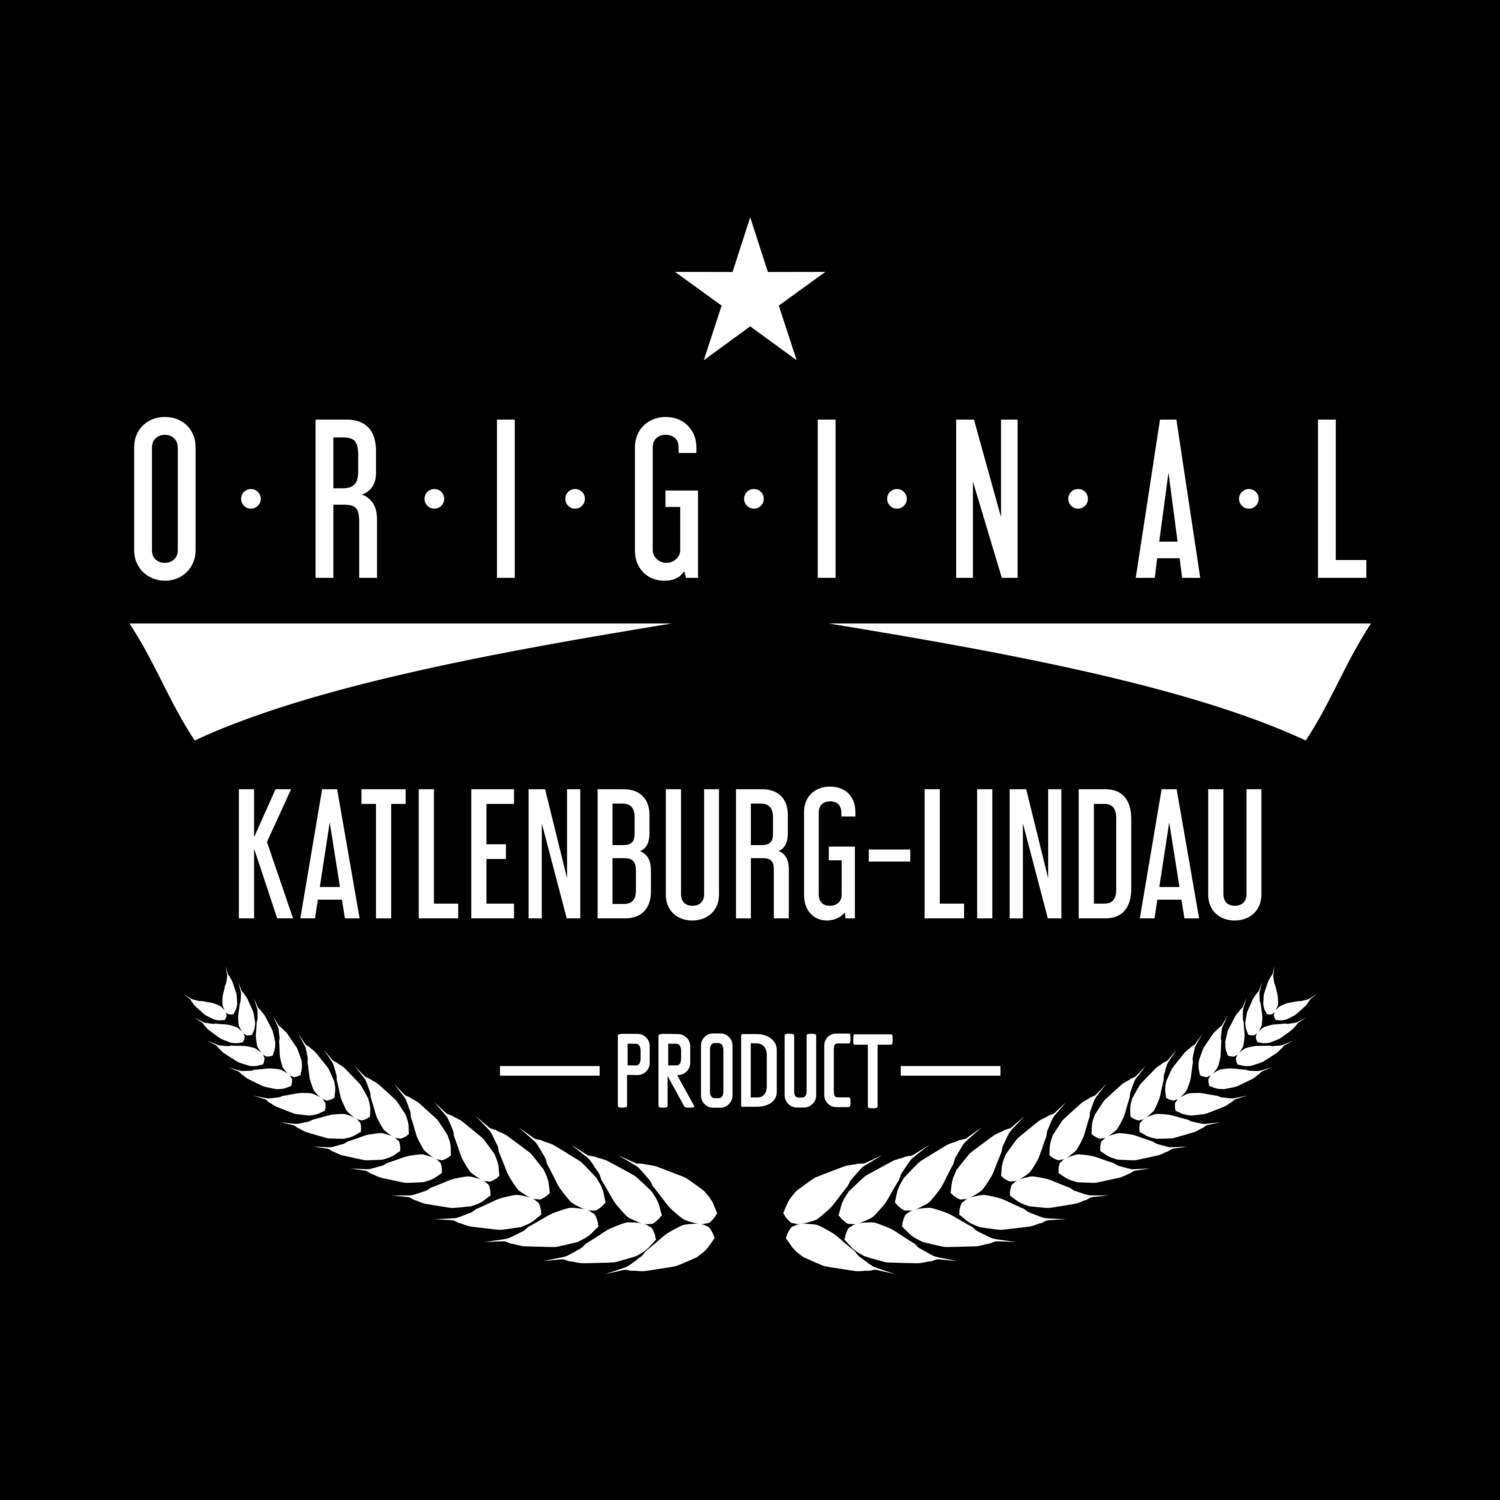 Katlenburg-Lindau T-Shirt »Original Product«